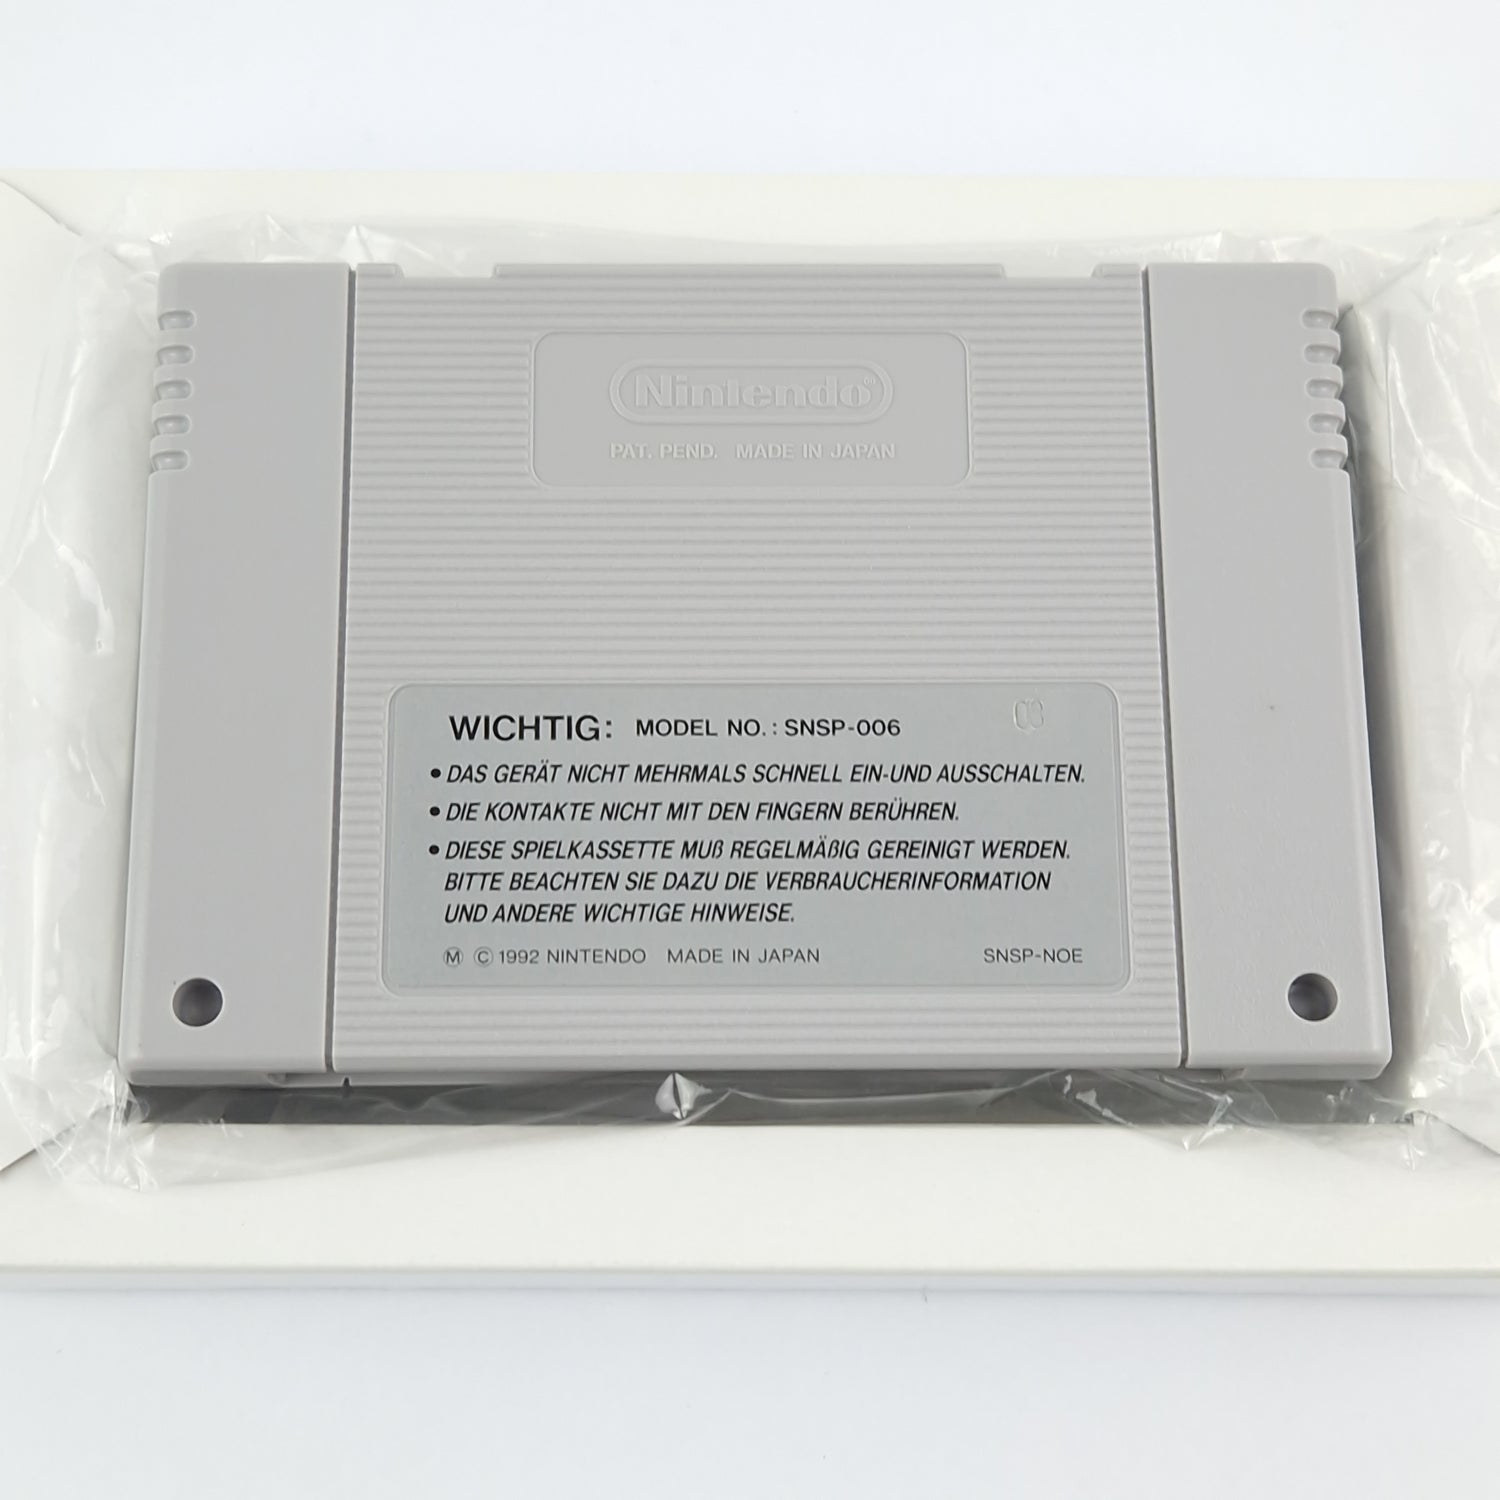 Super Nintendo Game: Mega Man X - Module Instructions OVP CIB SNES MegaMan X2 X3